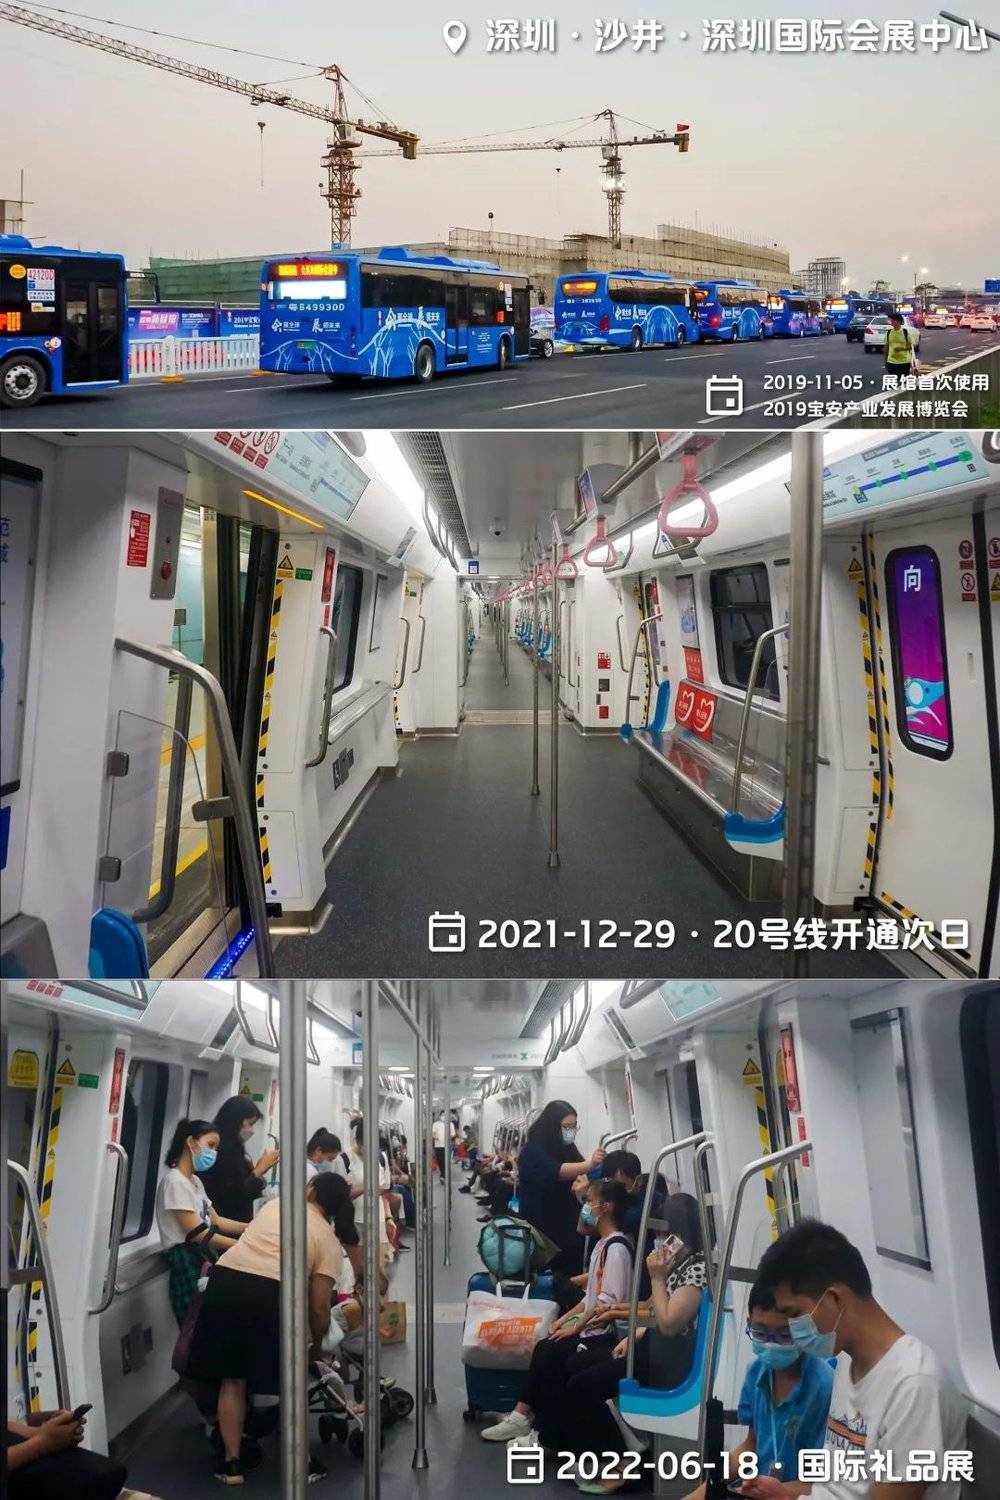 深圳国际会展中心是个匆忙上马赶工的项目，原使用专线接驳巴士连接地铁11号线，但第一次展会就因一个乱配时的红绿灯崩溃（上）；未获批先开工的地铁20号线两年后补票拿到准生证，取代了巴士，但即使有展会的日子，20号线客流也相当惨淡，现在还多了12号线分薄。